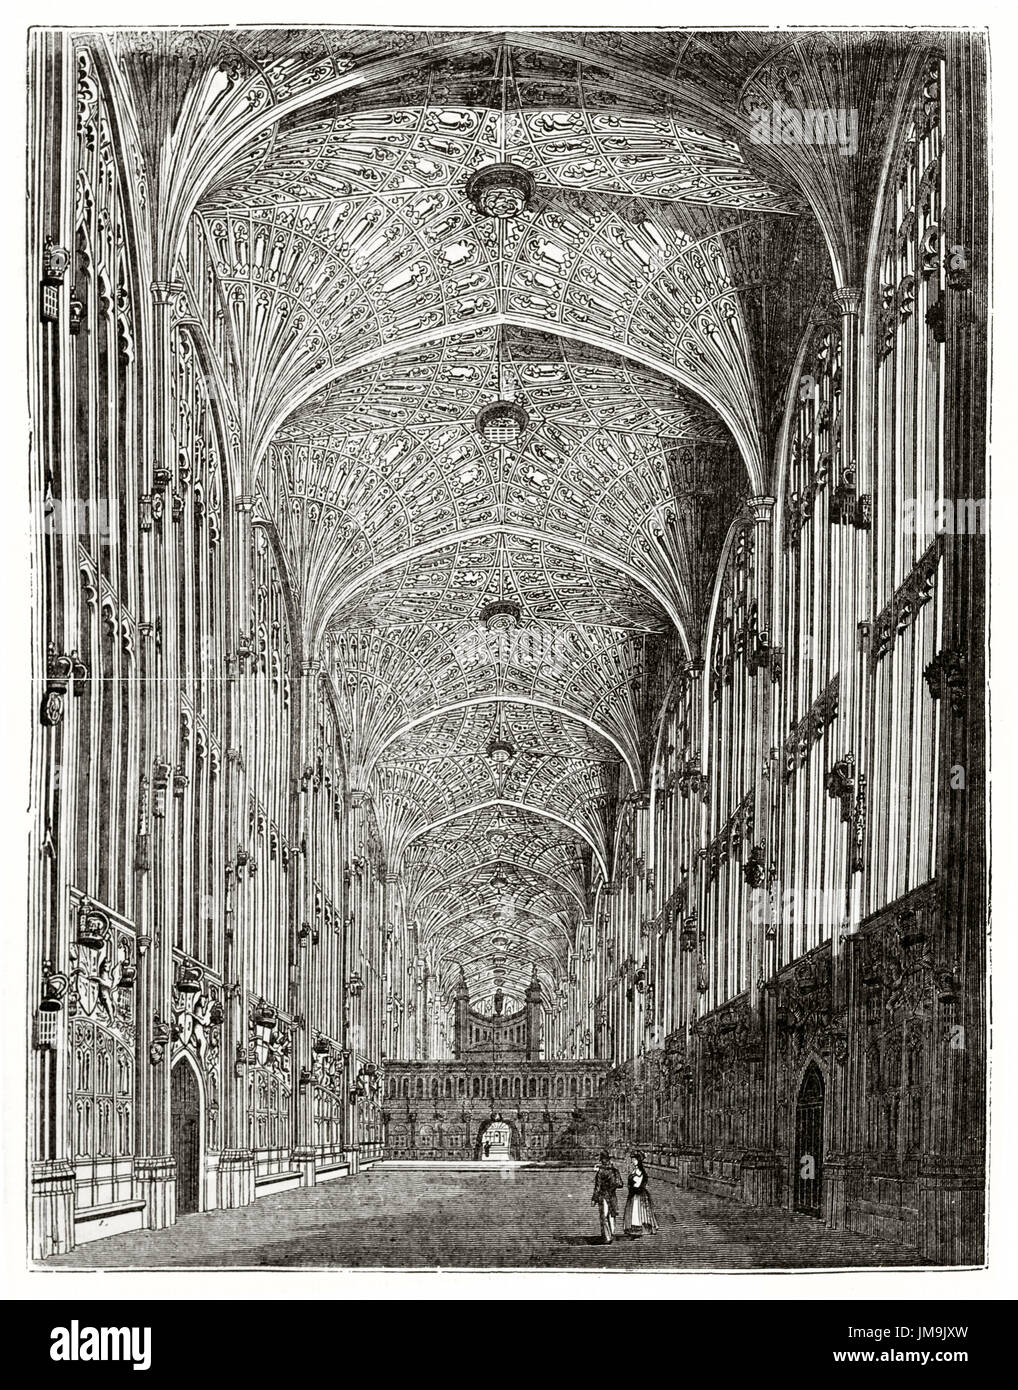 Vecchio vista del King's College Chapel interno a Cambridge nel Regno Unito. Da autore non identificato, pubblicato il Magasin pittoresco, Parigi, 1837. Foto Stock